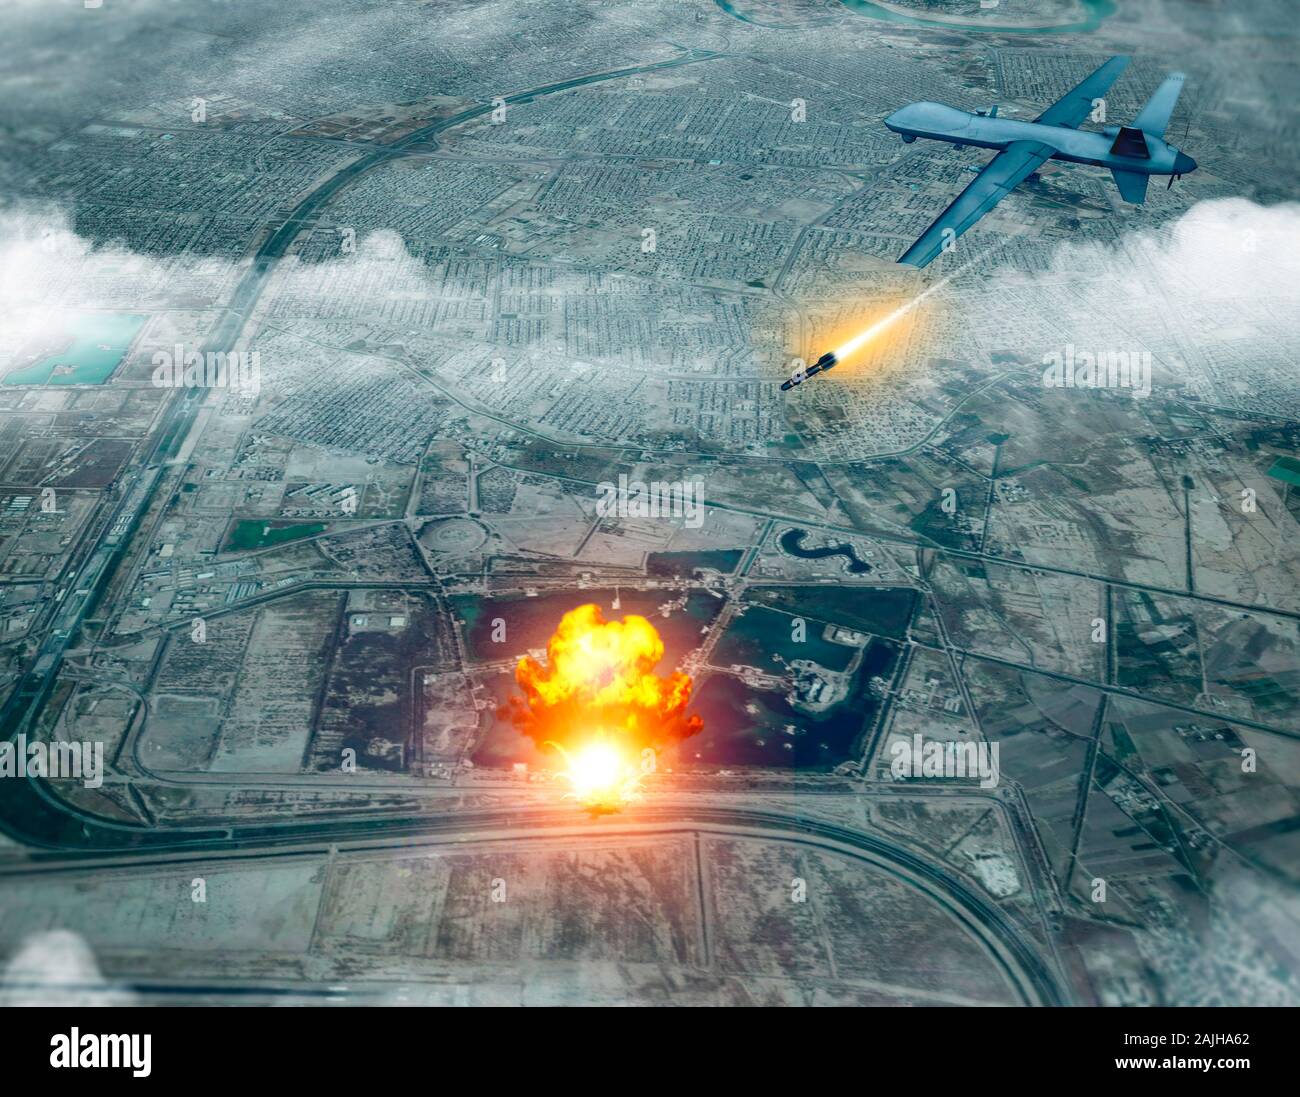 Noi drone attacco contro il convoglio del generale iraniano Soleimani Qassem, 3d rendering. Aeroporto di Baghdad, Iraq. Foto Stock